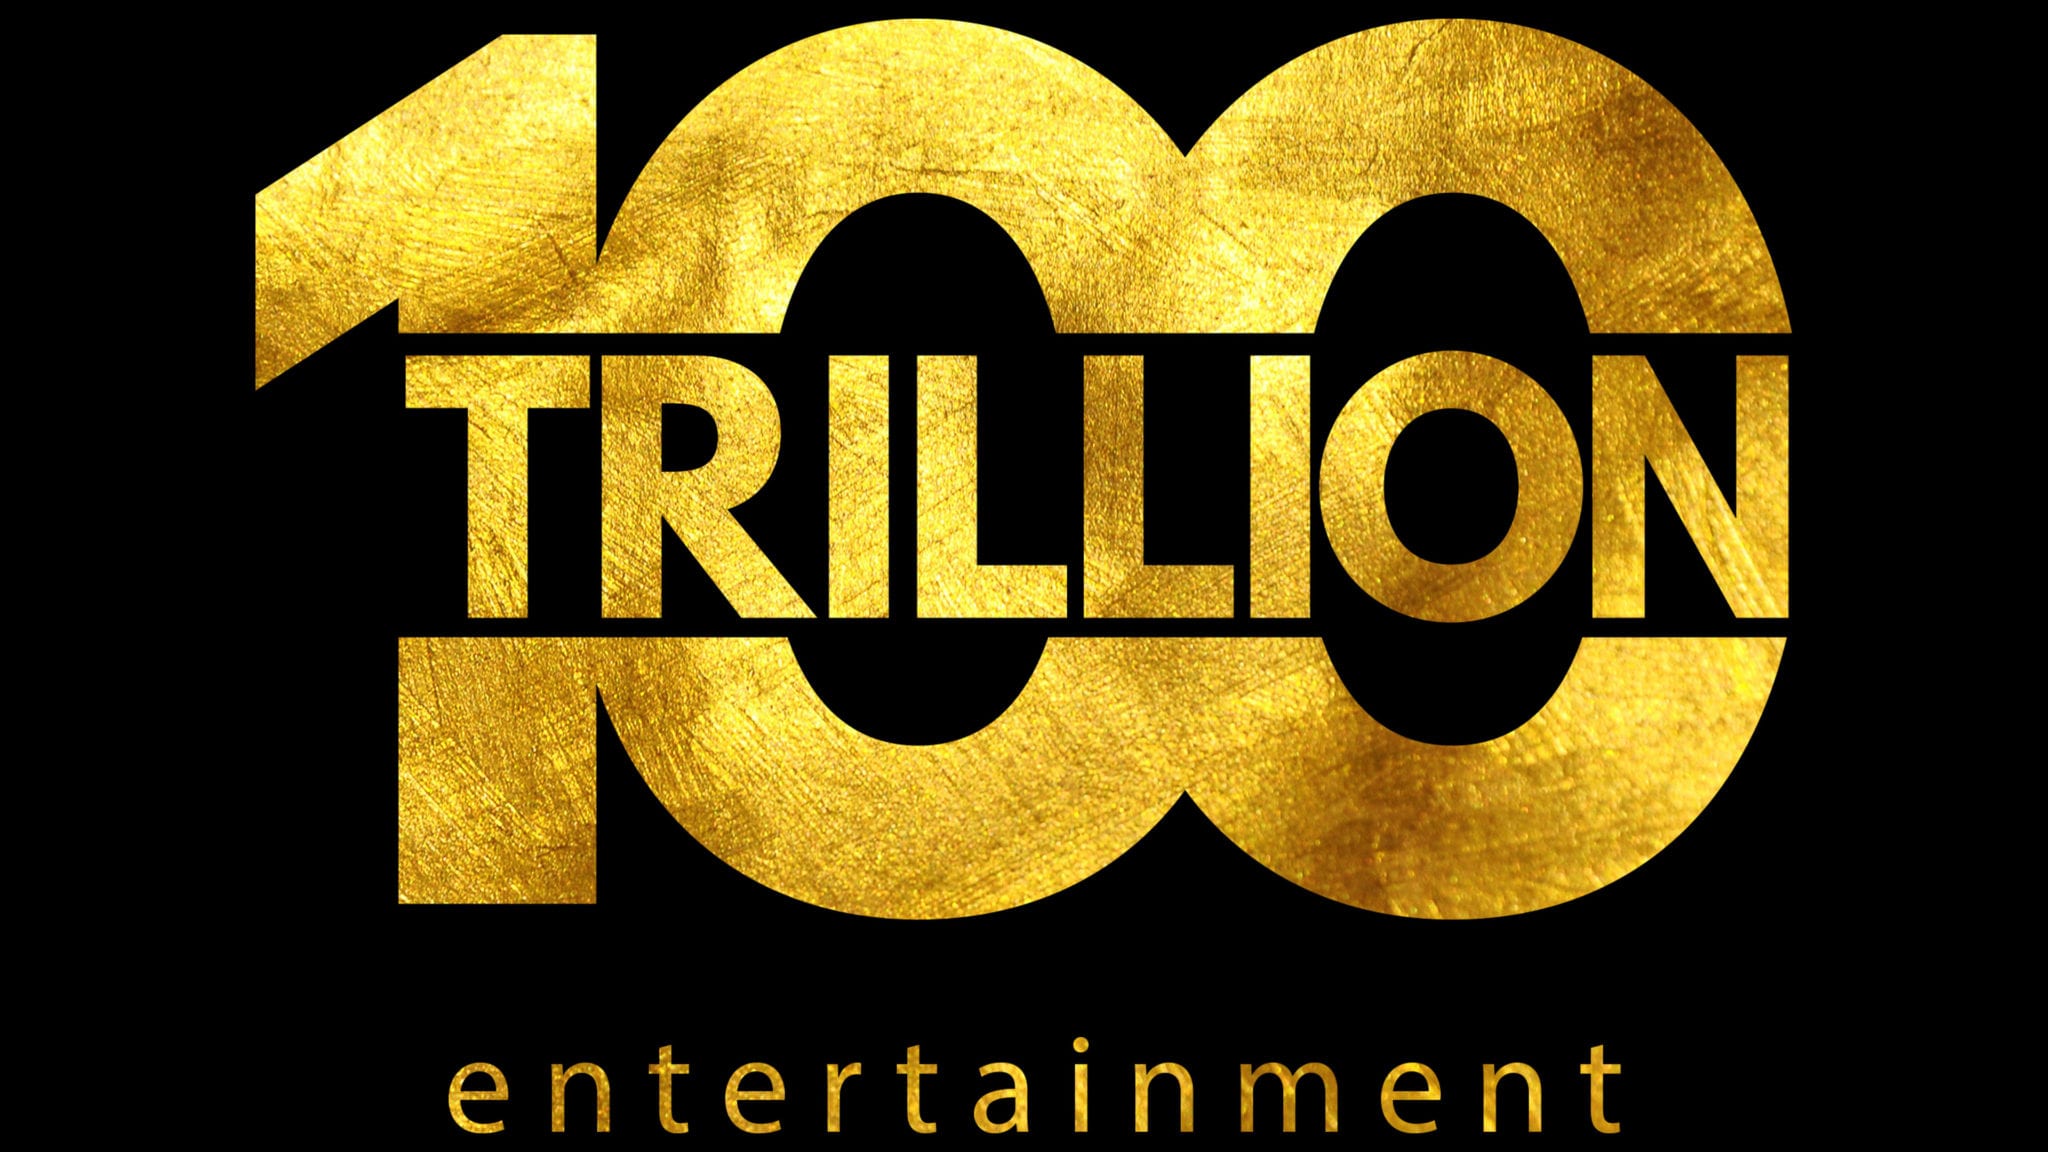 Terry-Milla-100-Trillion-Entertainment-1